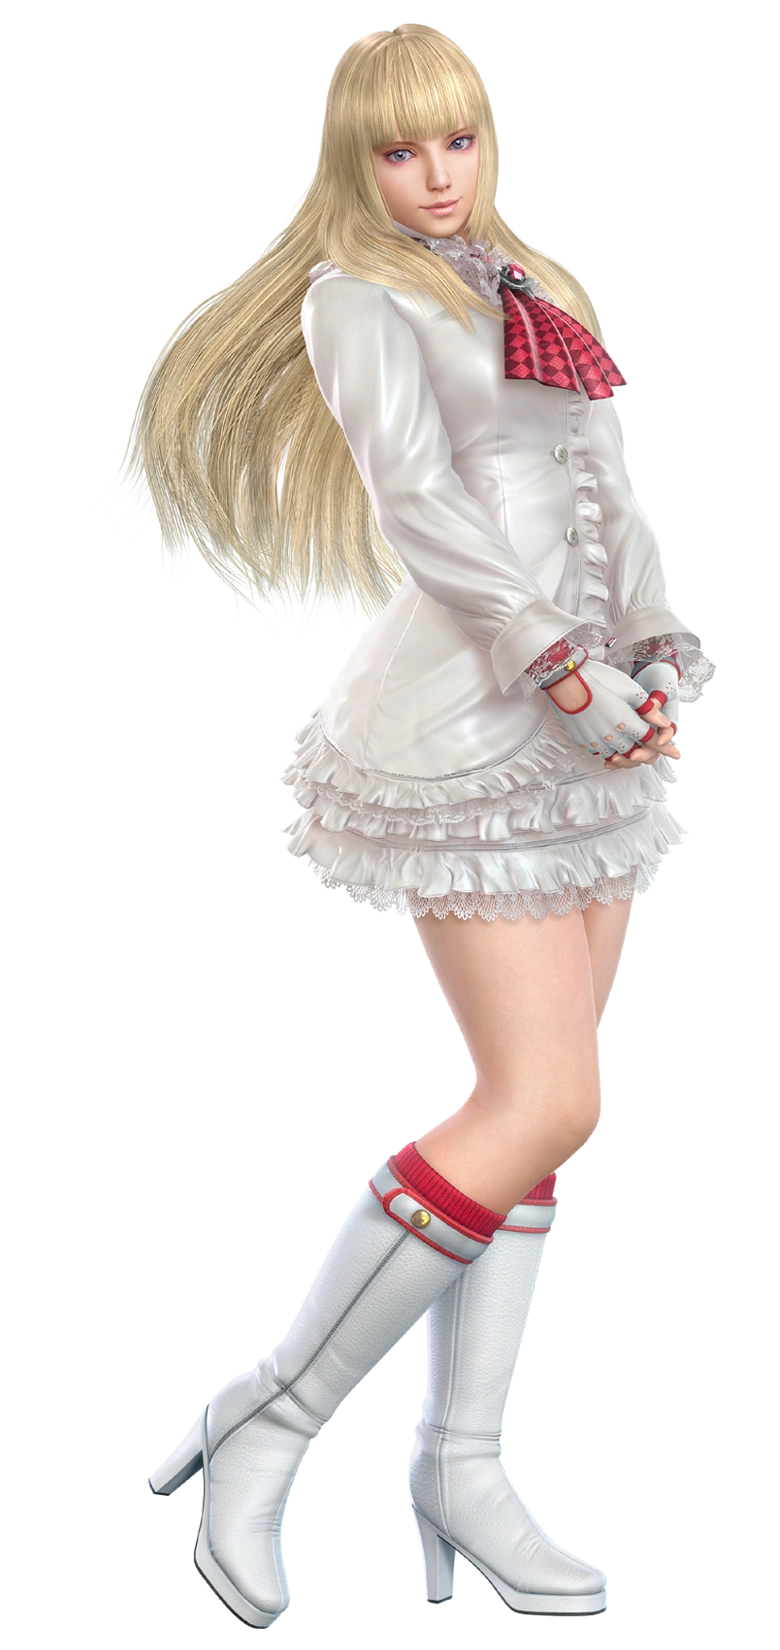 Lili - Full-body CG Art Image - Tekken 6.png